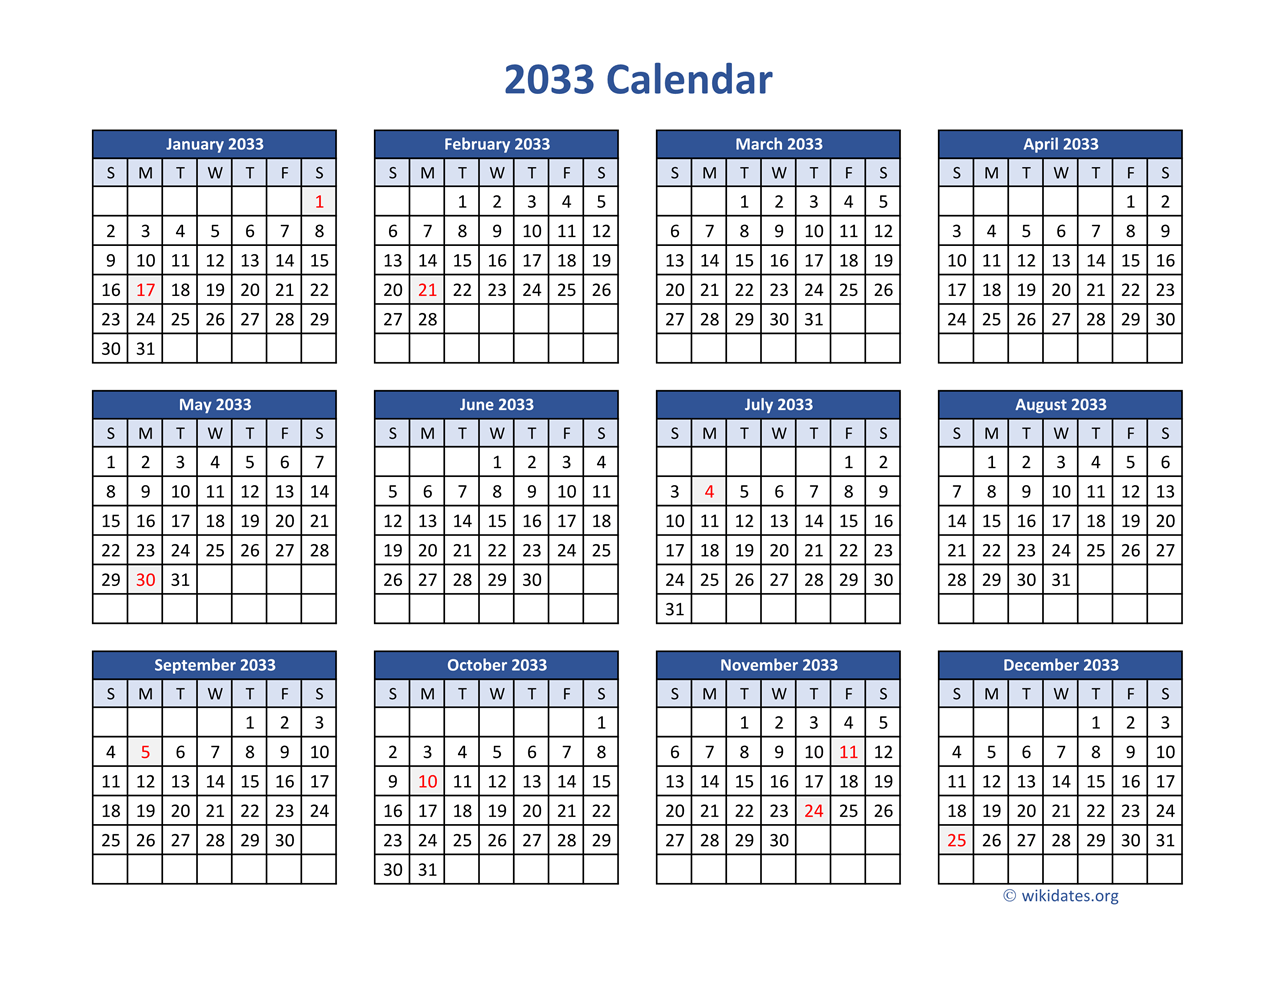 2033 Calendar in PDF | WikiDates.org